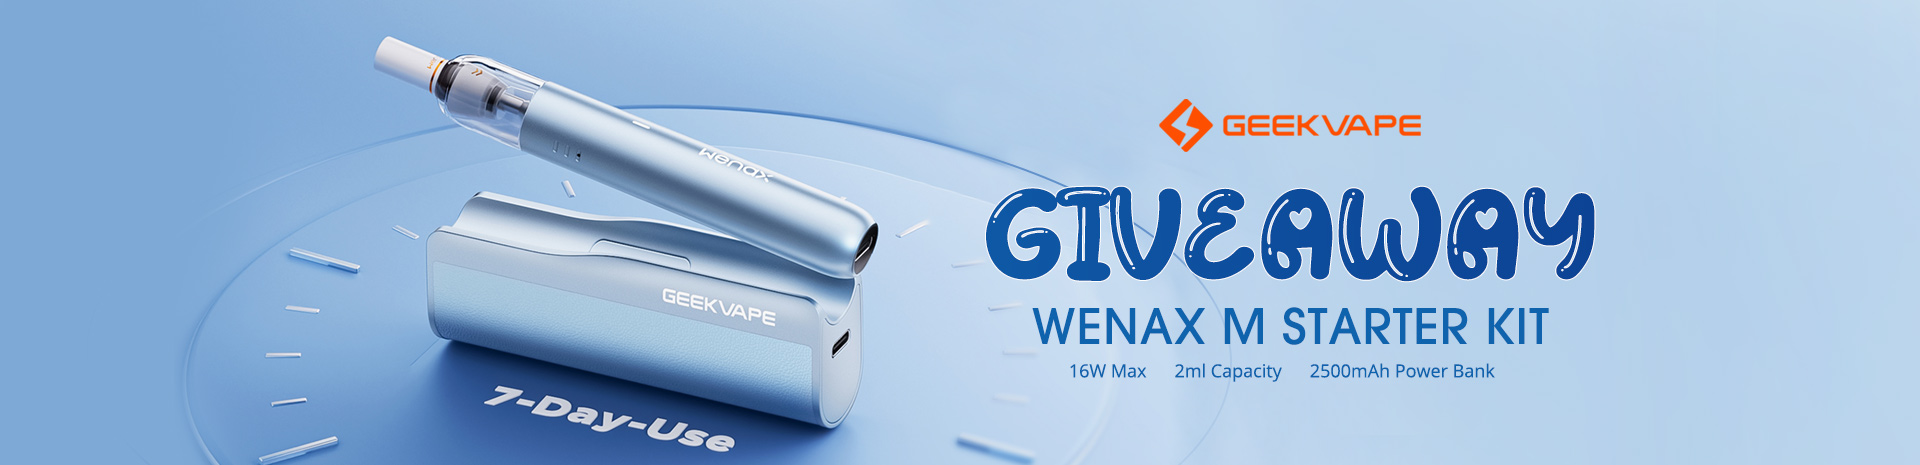 Geekvape Wenax M Starter Kit Giveaway